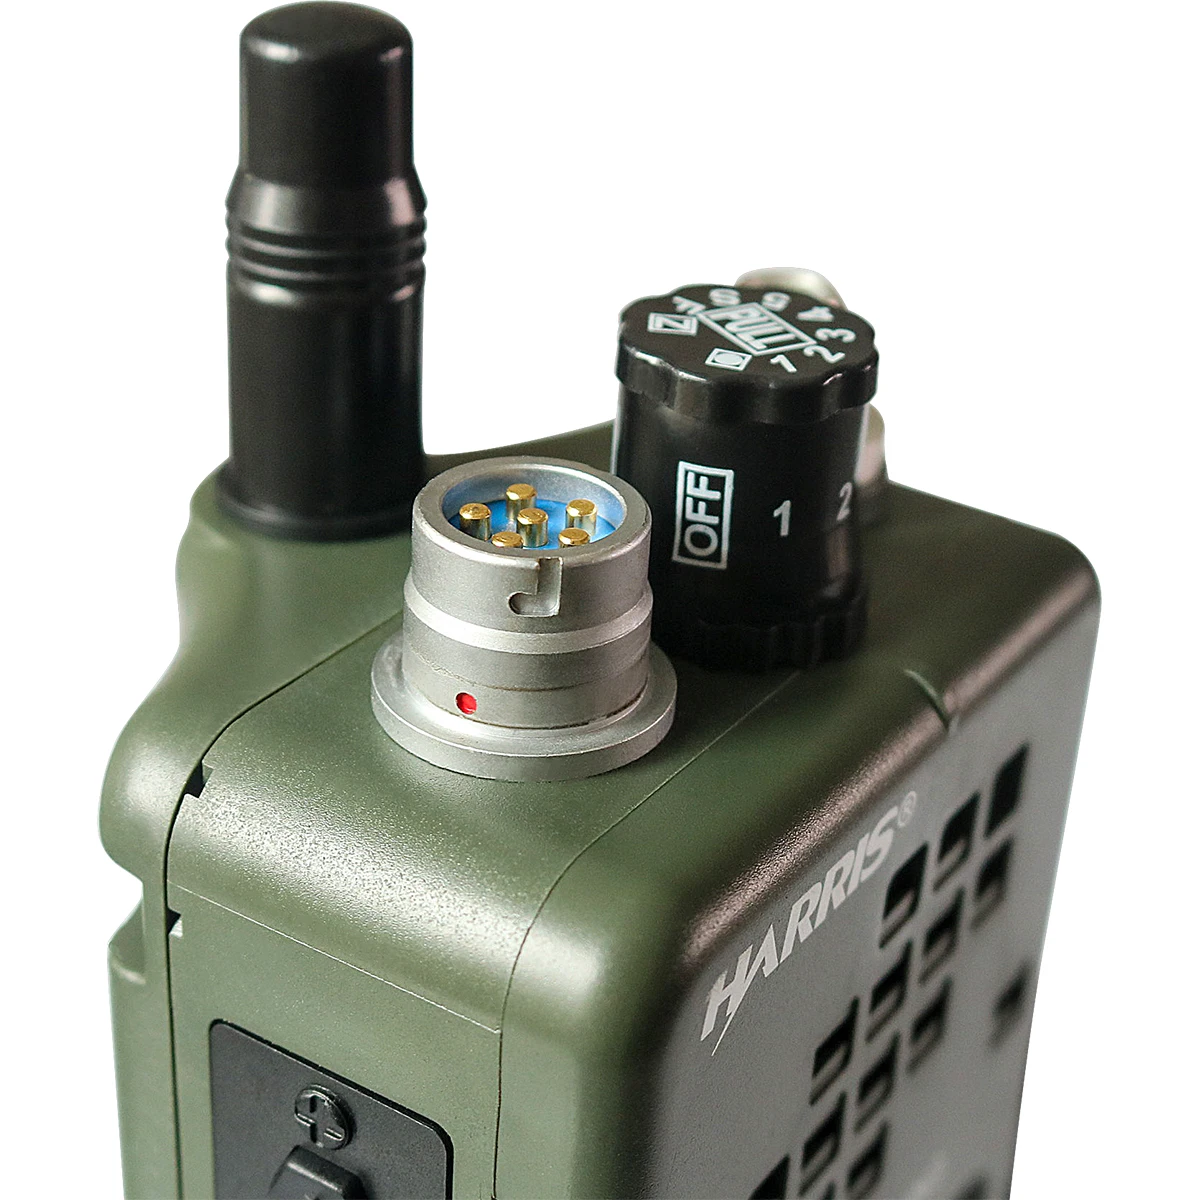 manequim, talkie militar-walkie modelo para rádio baofeng, nenhuma função